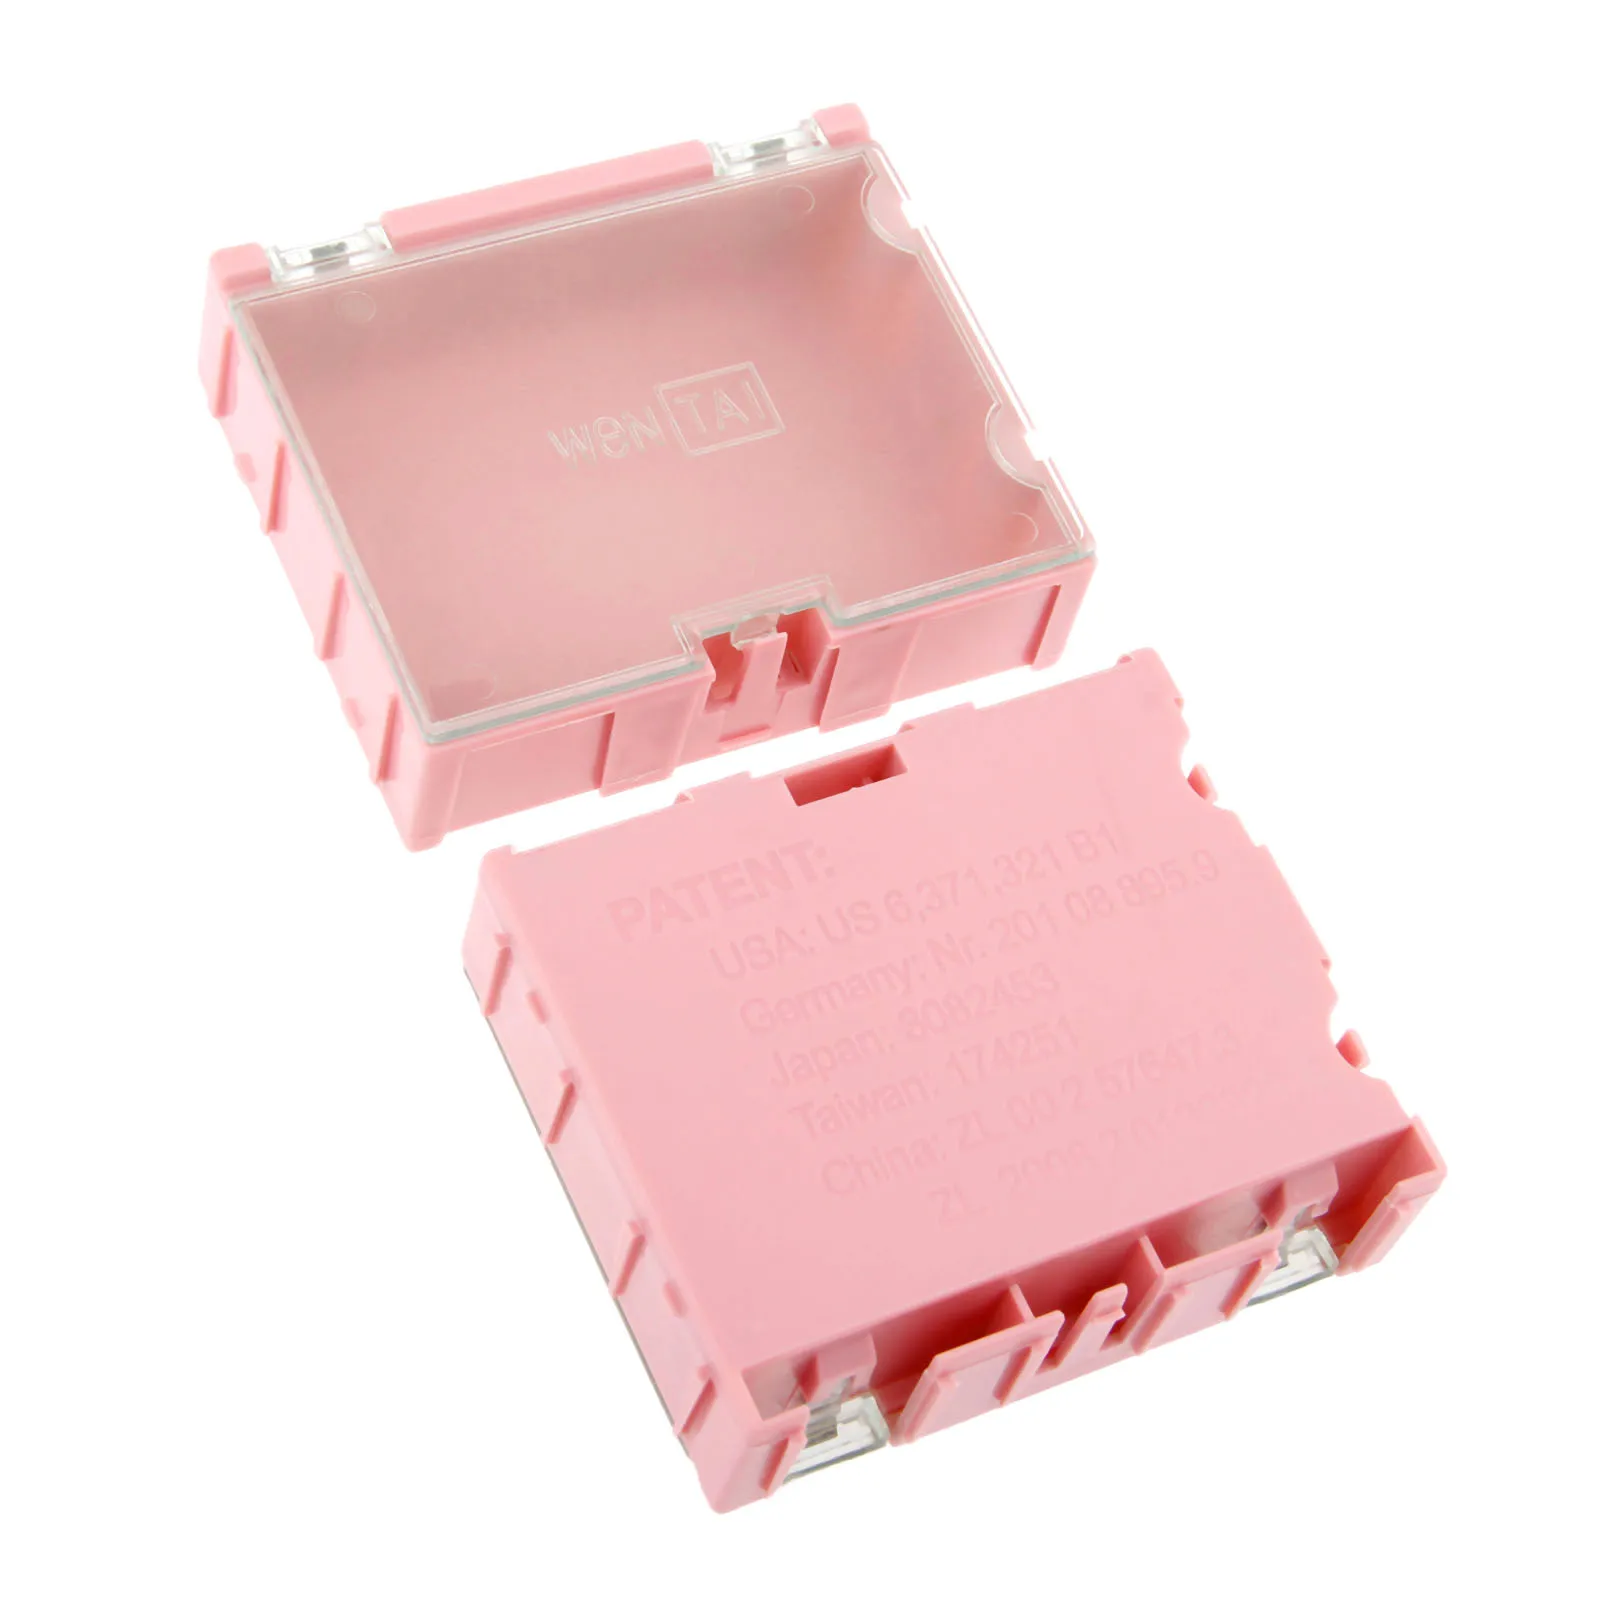 DRELD 2 шт. SMD SMT компонент ящики для хранения контейнеров чехол Пластиковые Ювелирные Изделия Электронный Чехол коробки для инструментов розовый 75*63*21 мм